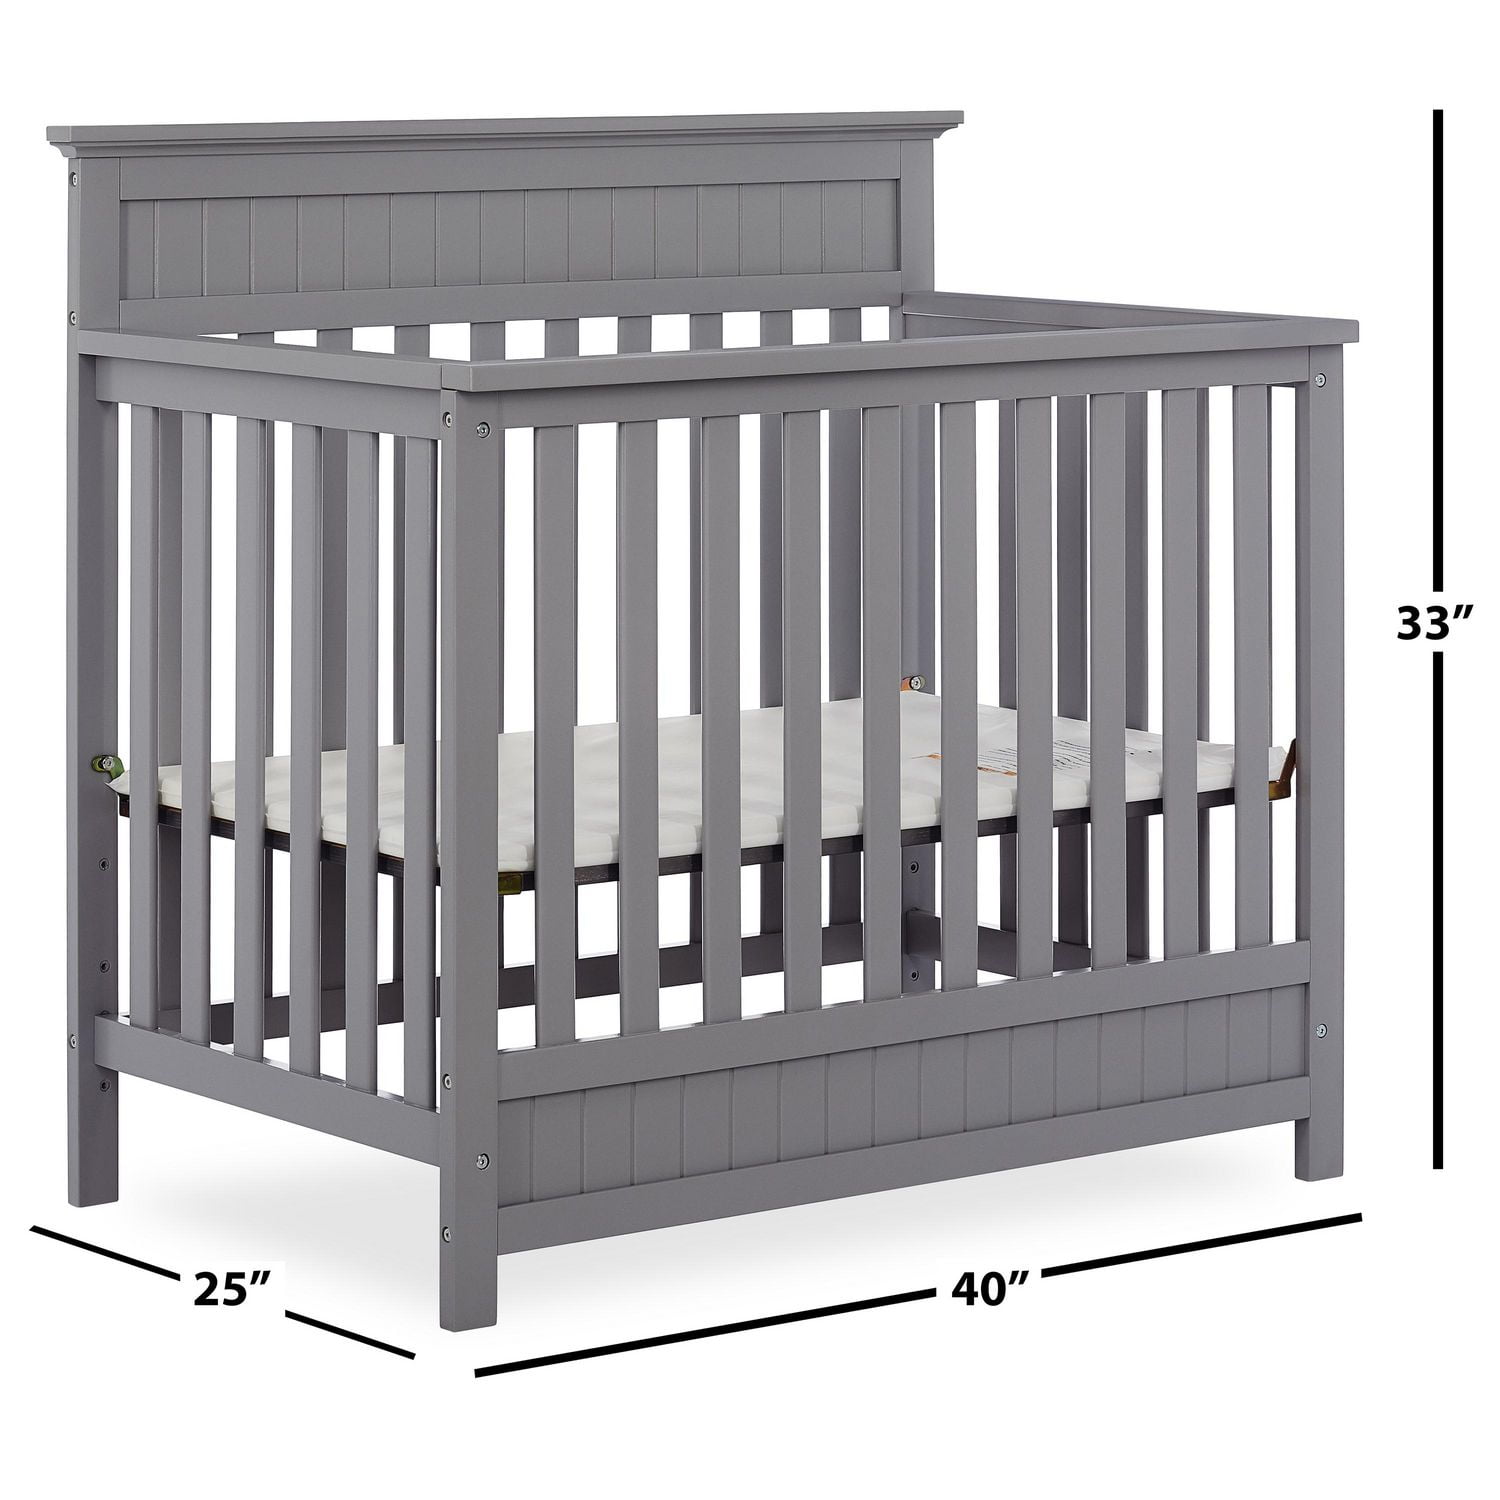 Dream On Harbor 4-in-1 Convertible Mini Crib, For small nurseries 